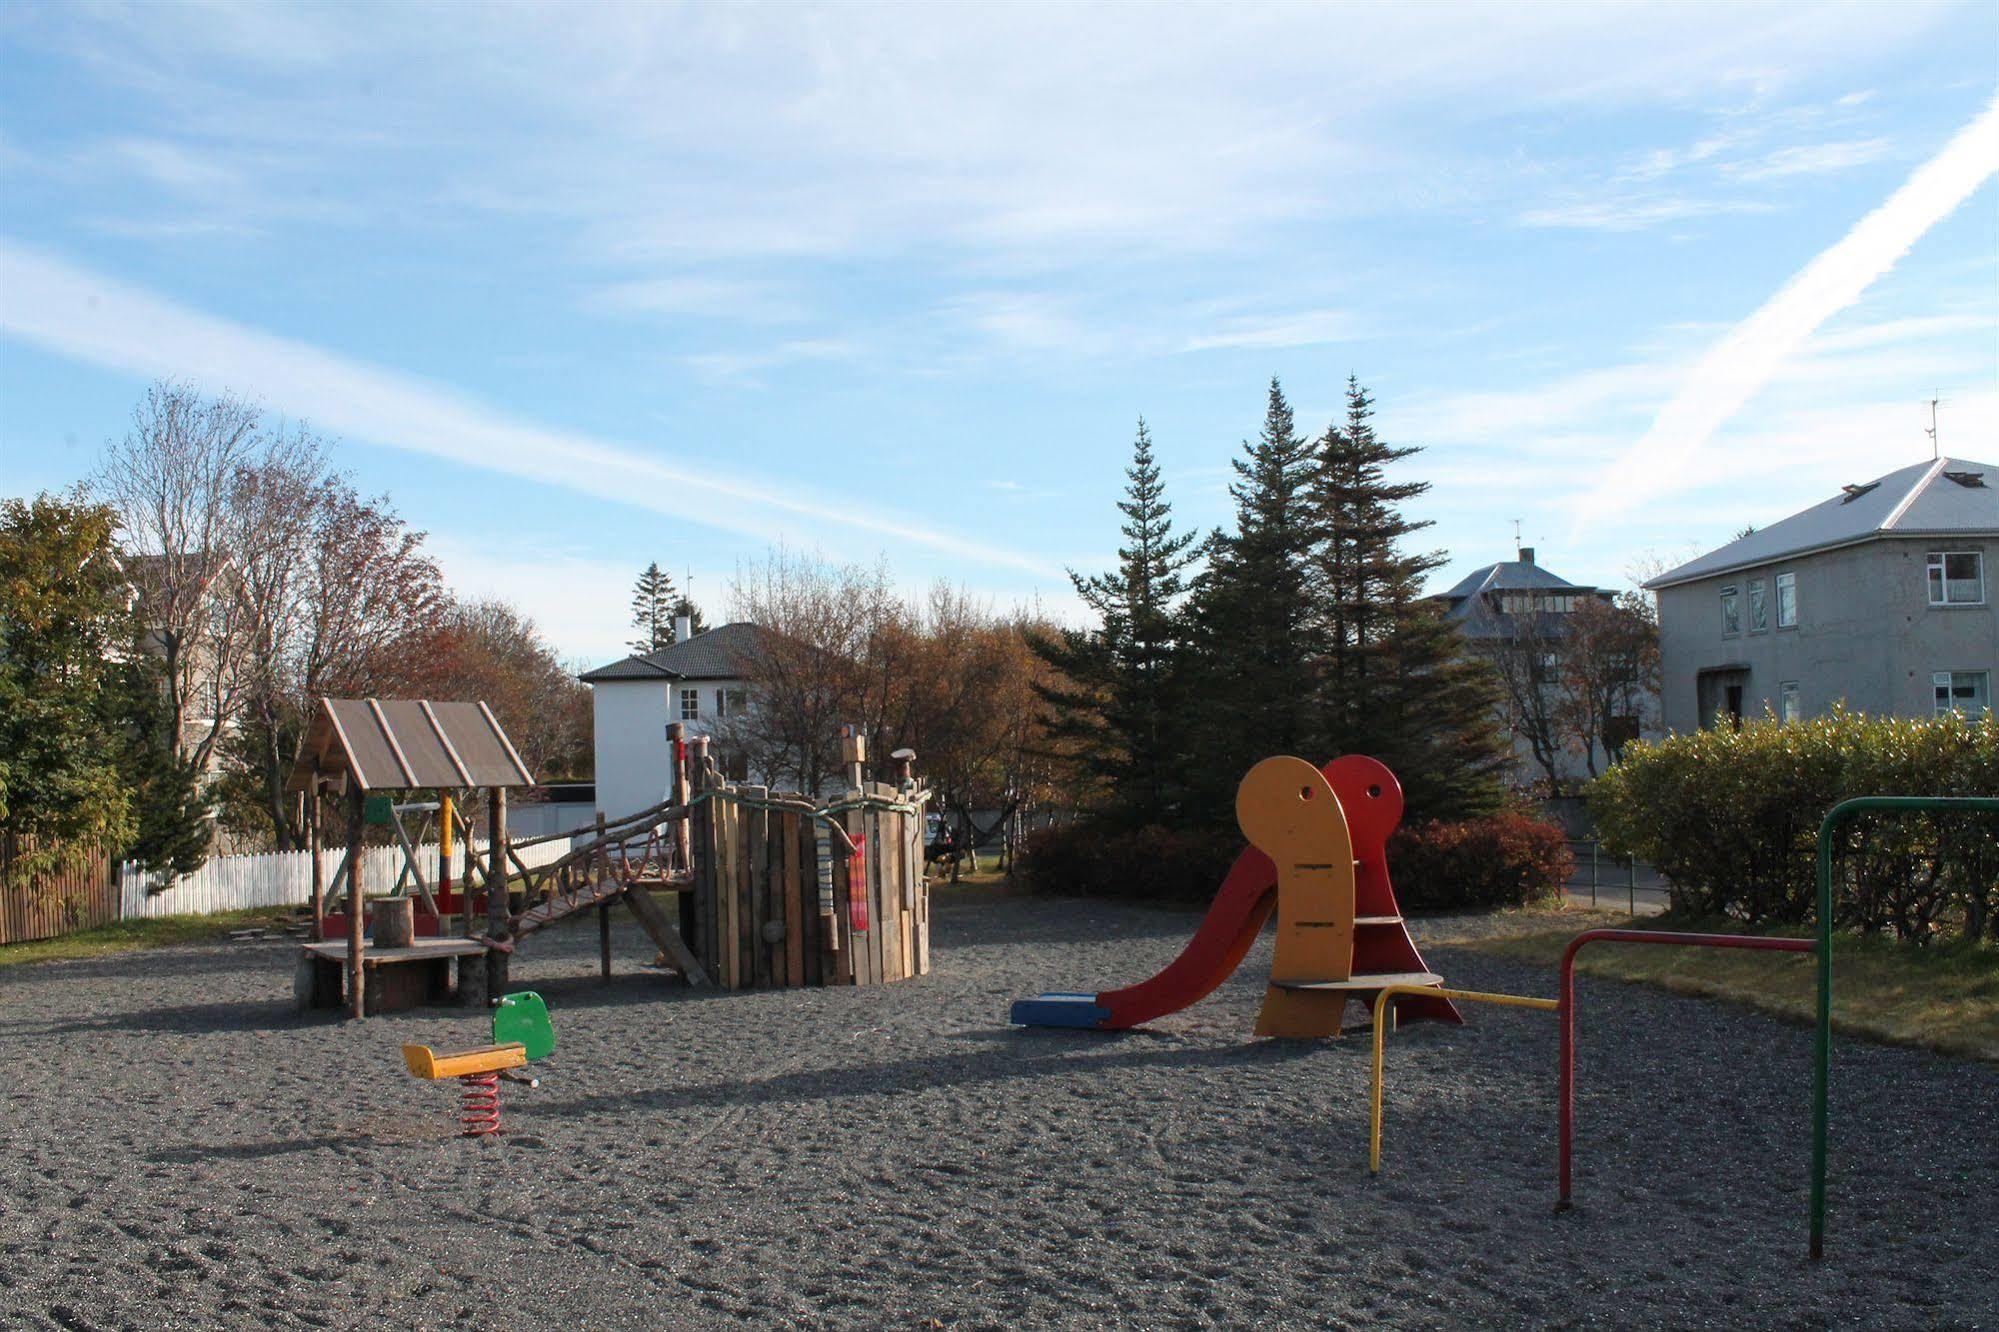 Reykjavik Hostel Village Exterior foto